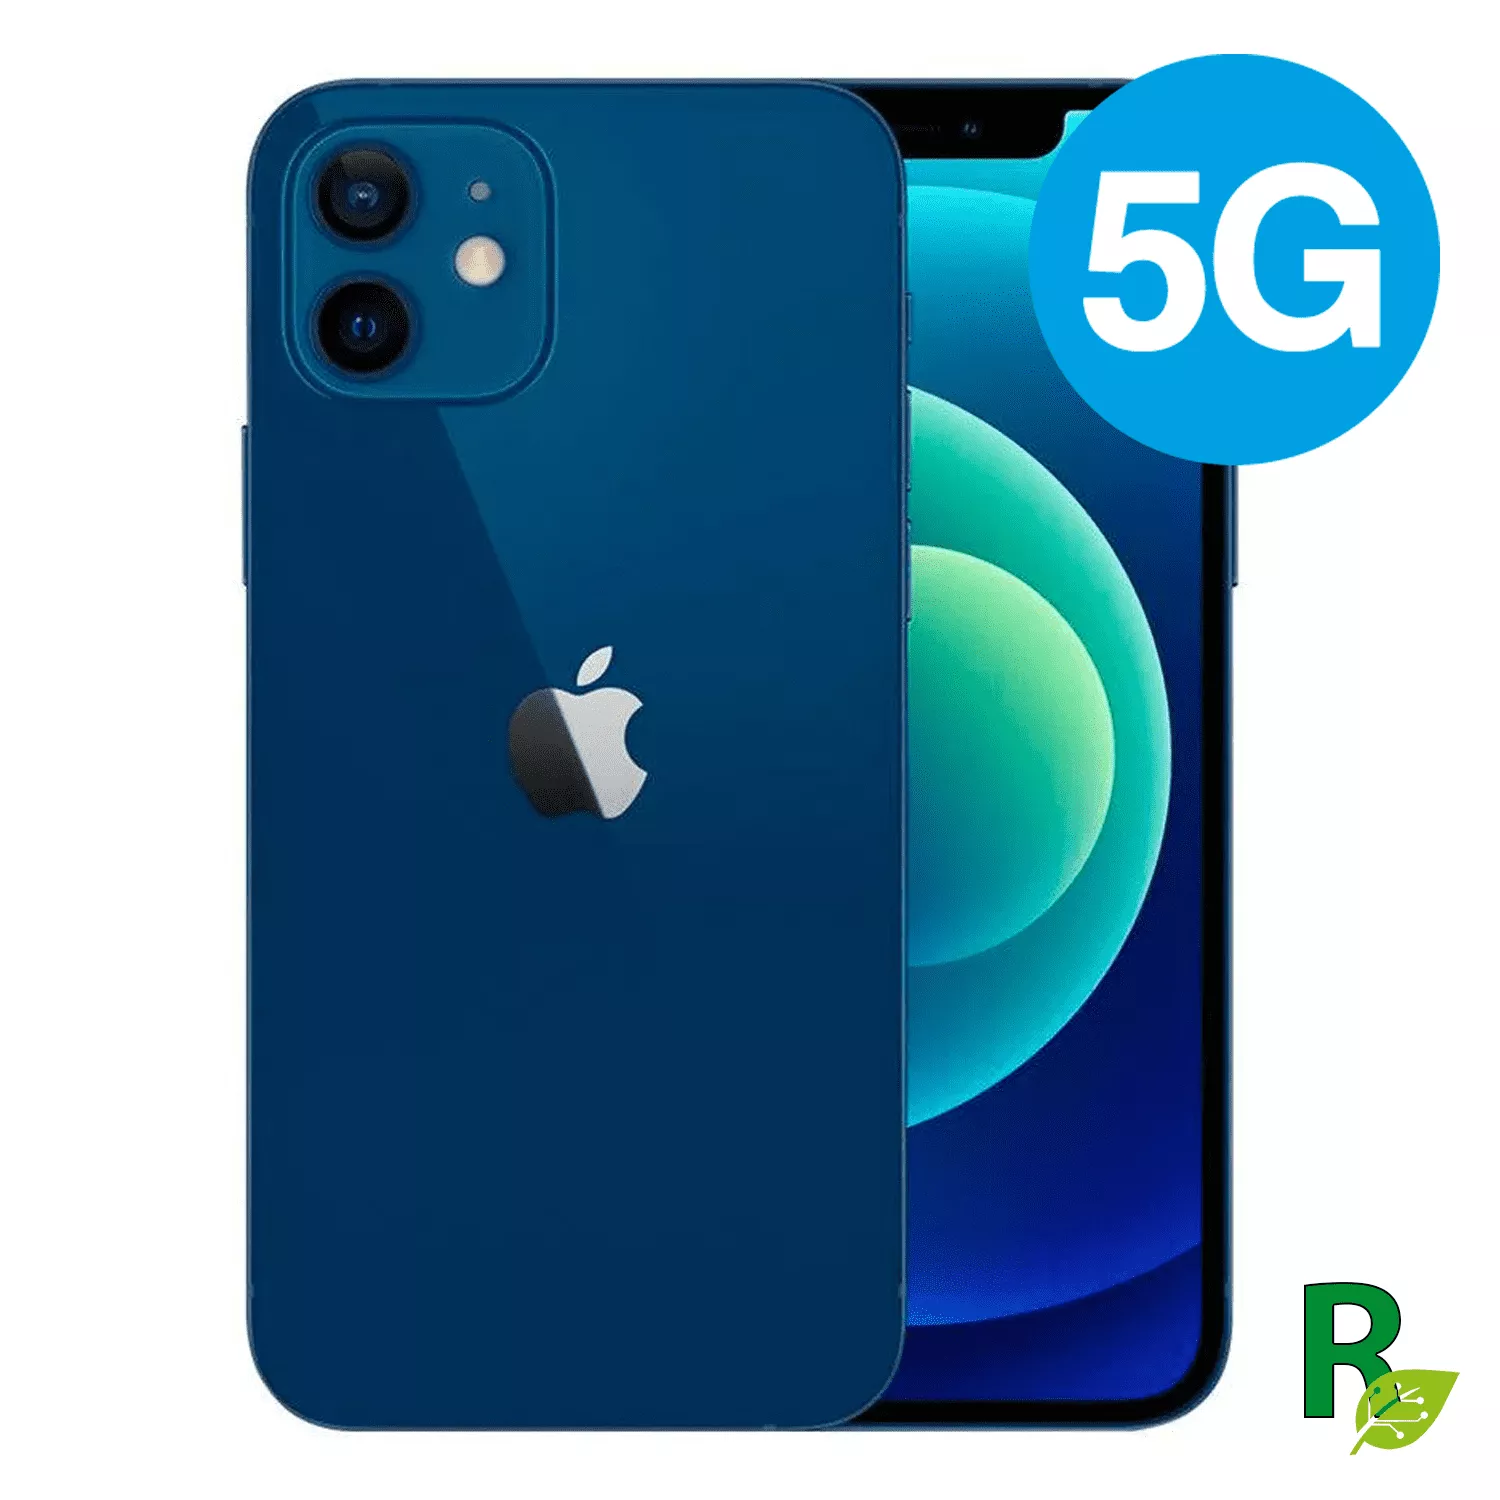 Celular Reacondicionado iPhone 12 Mini 64GB - Blue - 12MINIBLUE64AB - Cat. AB 12M64IPH5